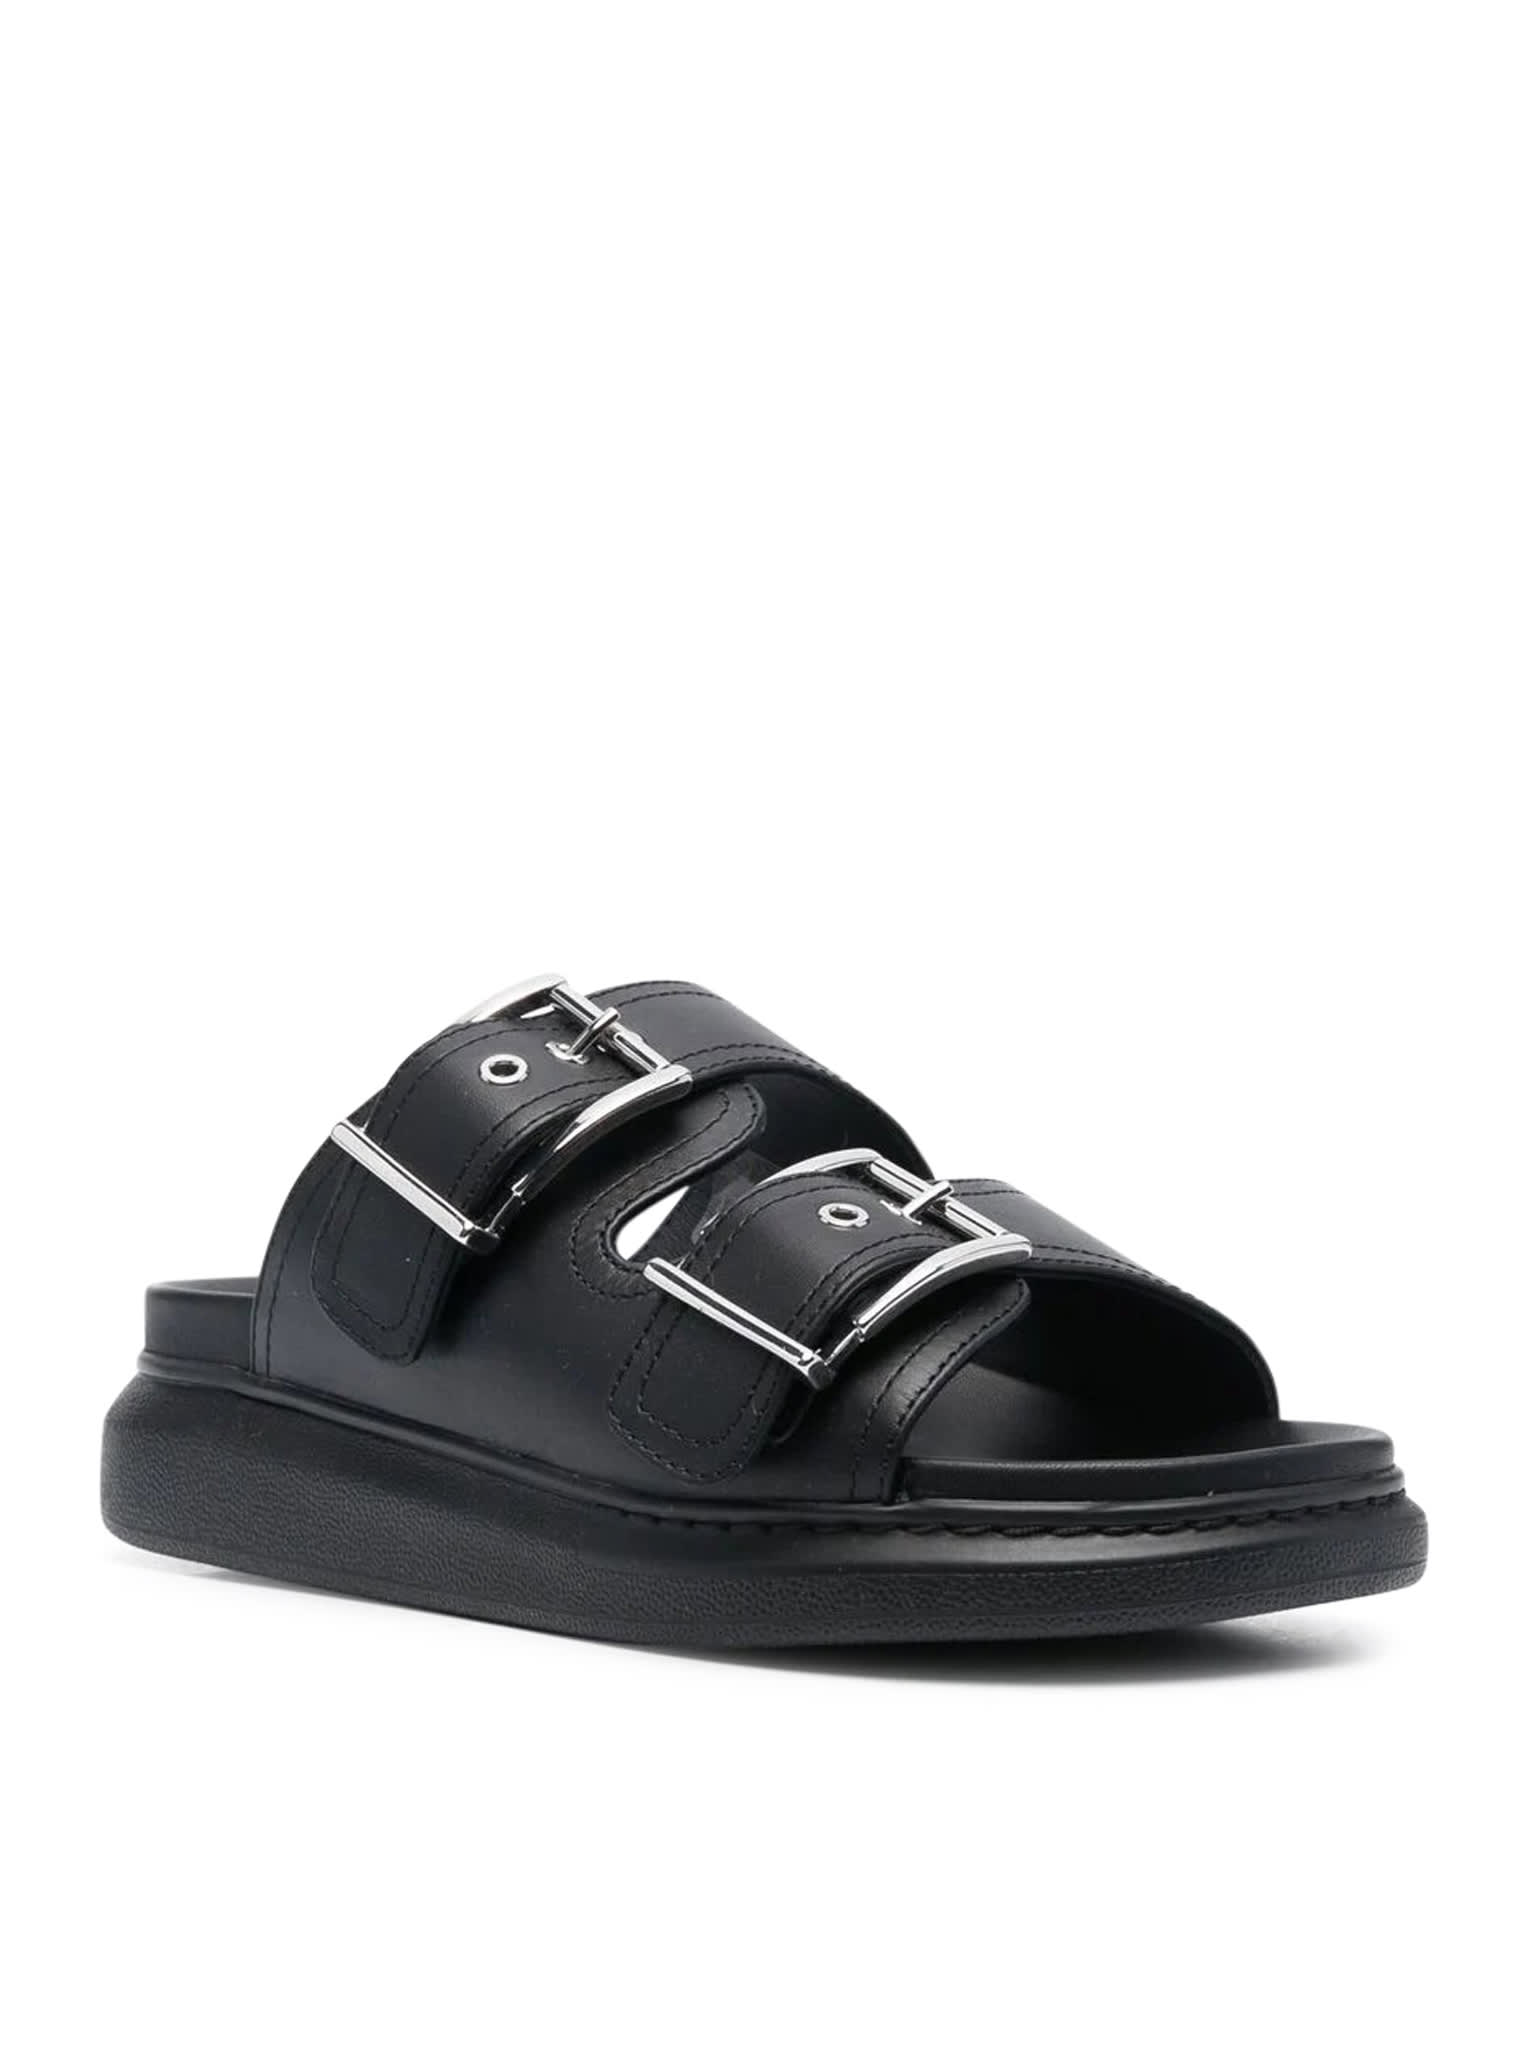 New Alexander McQueen S/S 2012 Leather Studded Horn Heel Platform Sandals  38.5